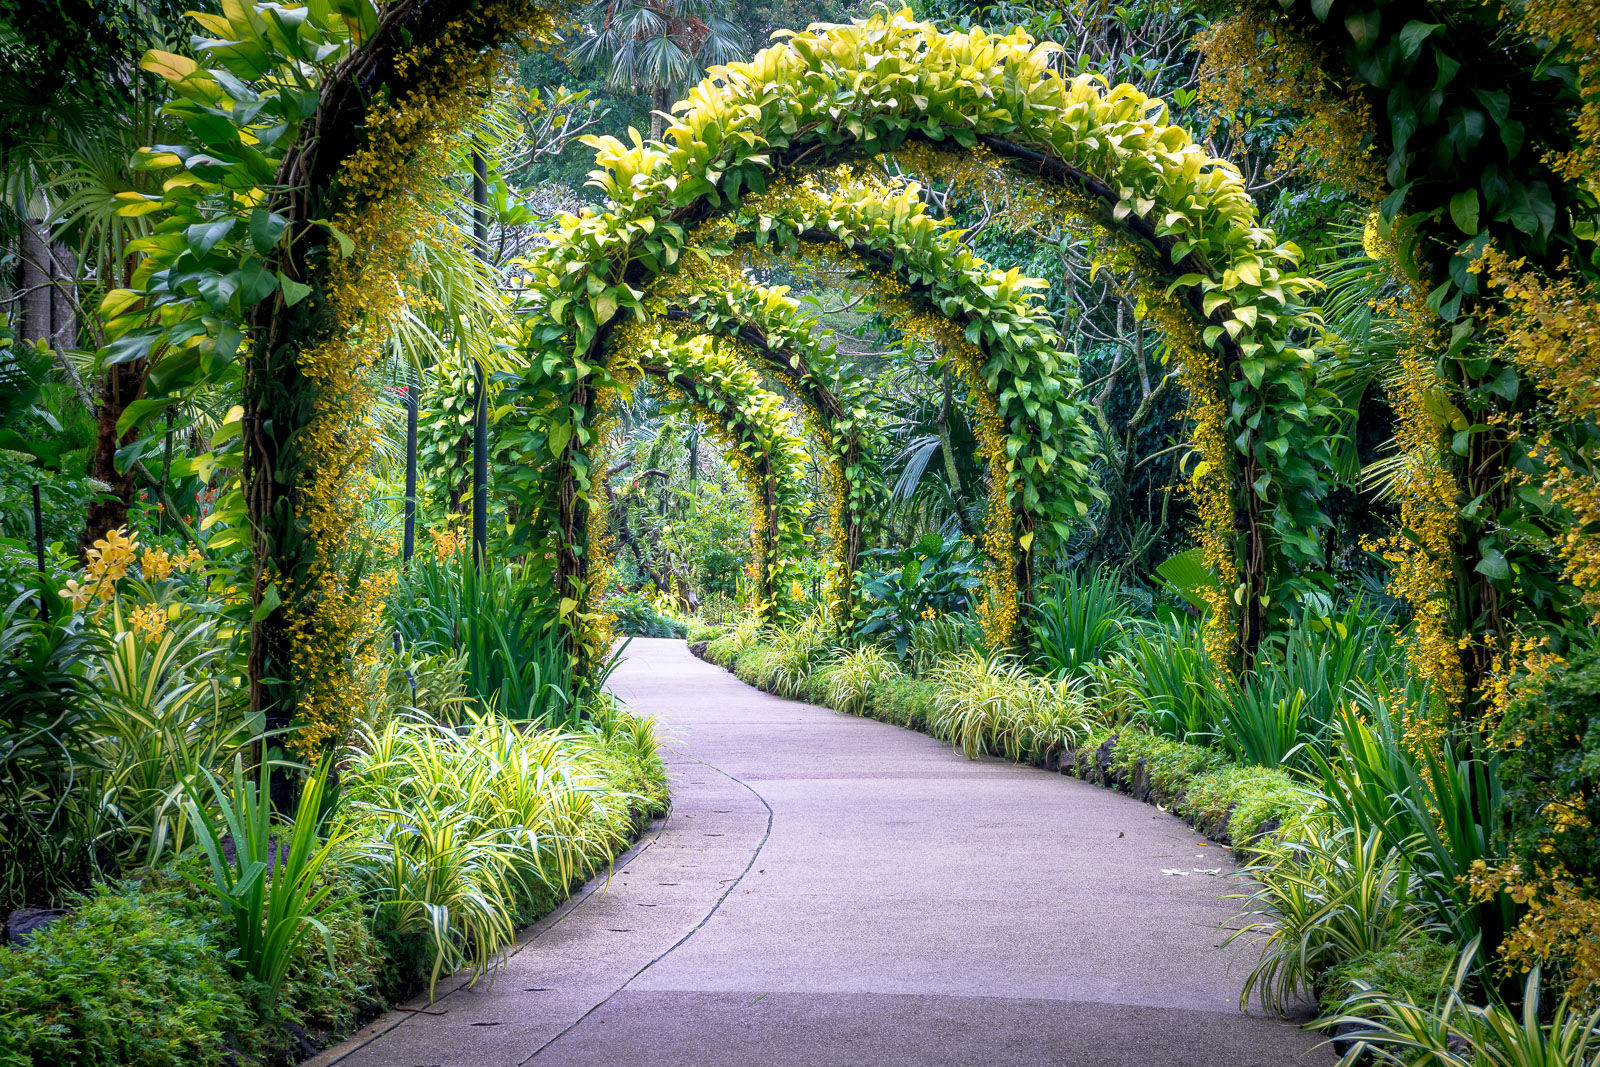 Cultivating Singapore’s Reputation As A Garden City: Singapore Botanic Gardens